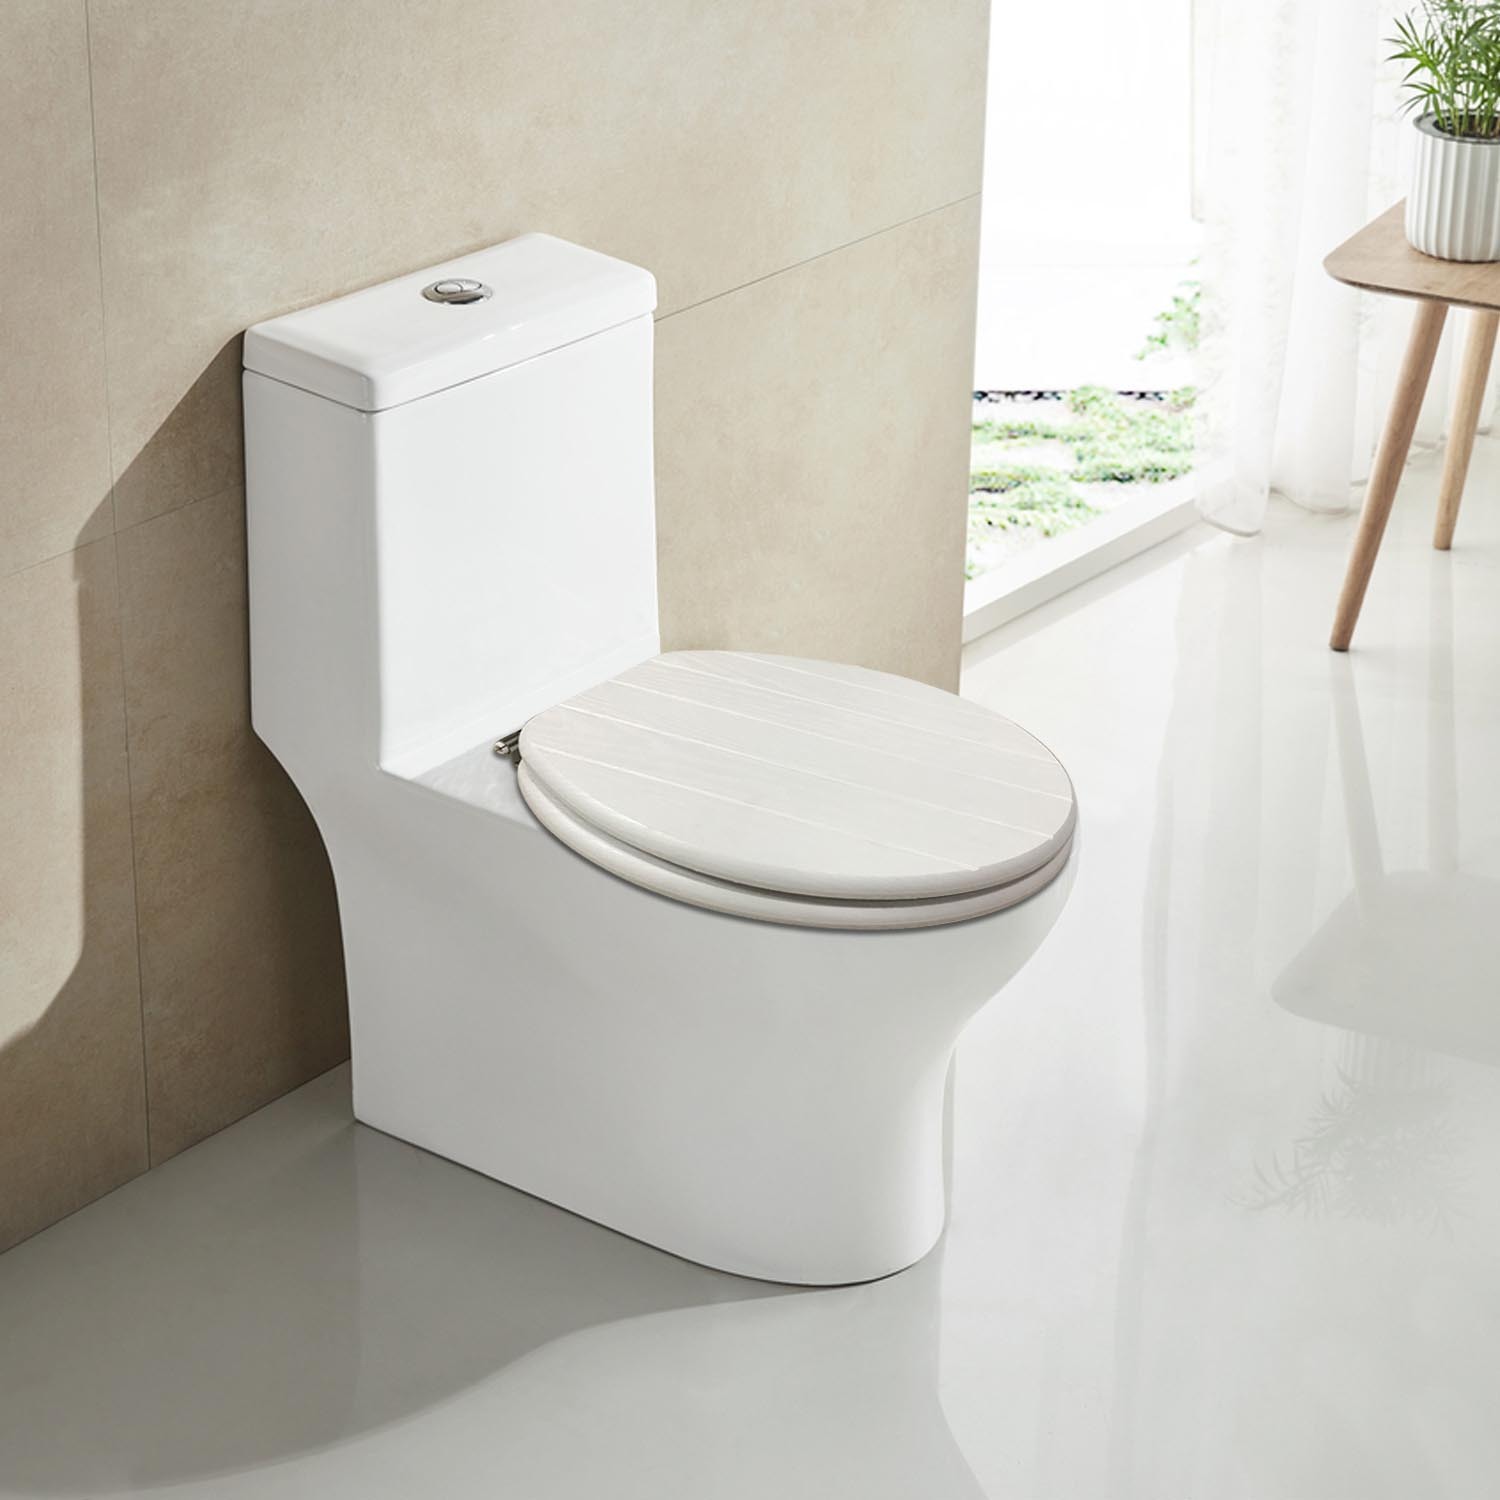 Kingsbury Toilet Seat - White Image 3